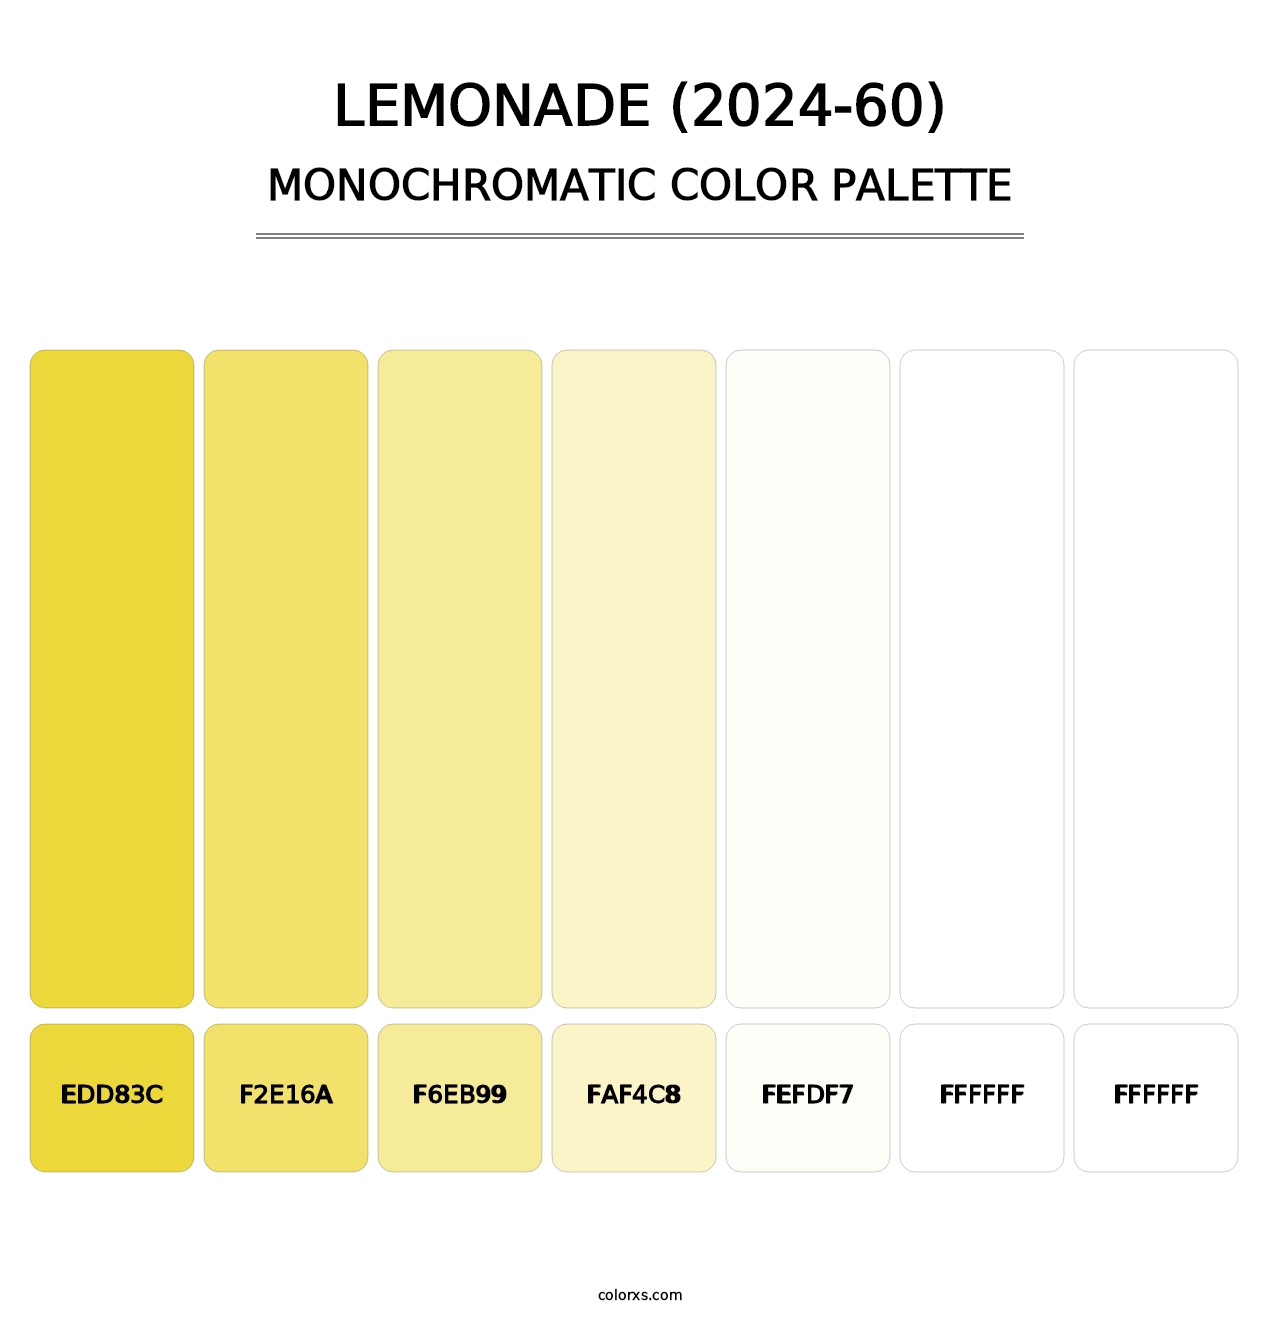 Lemonade (2024-60) - Monochromatic Color Palette